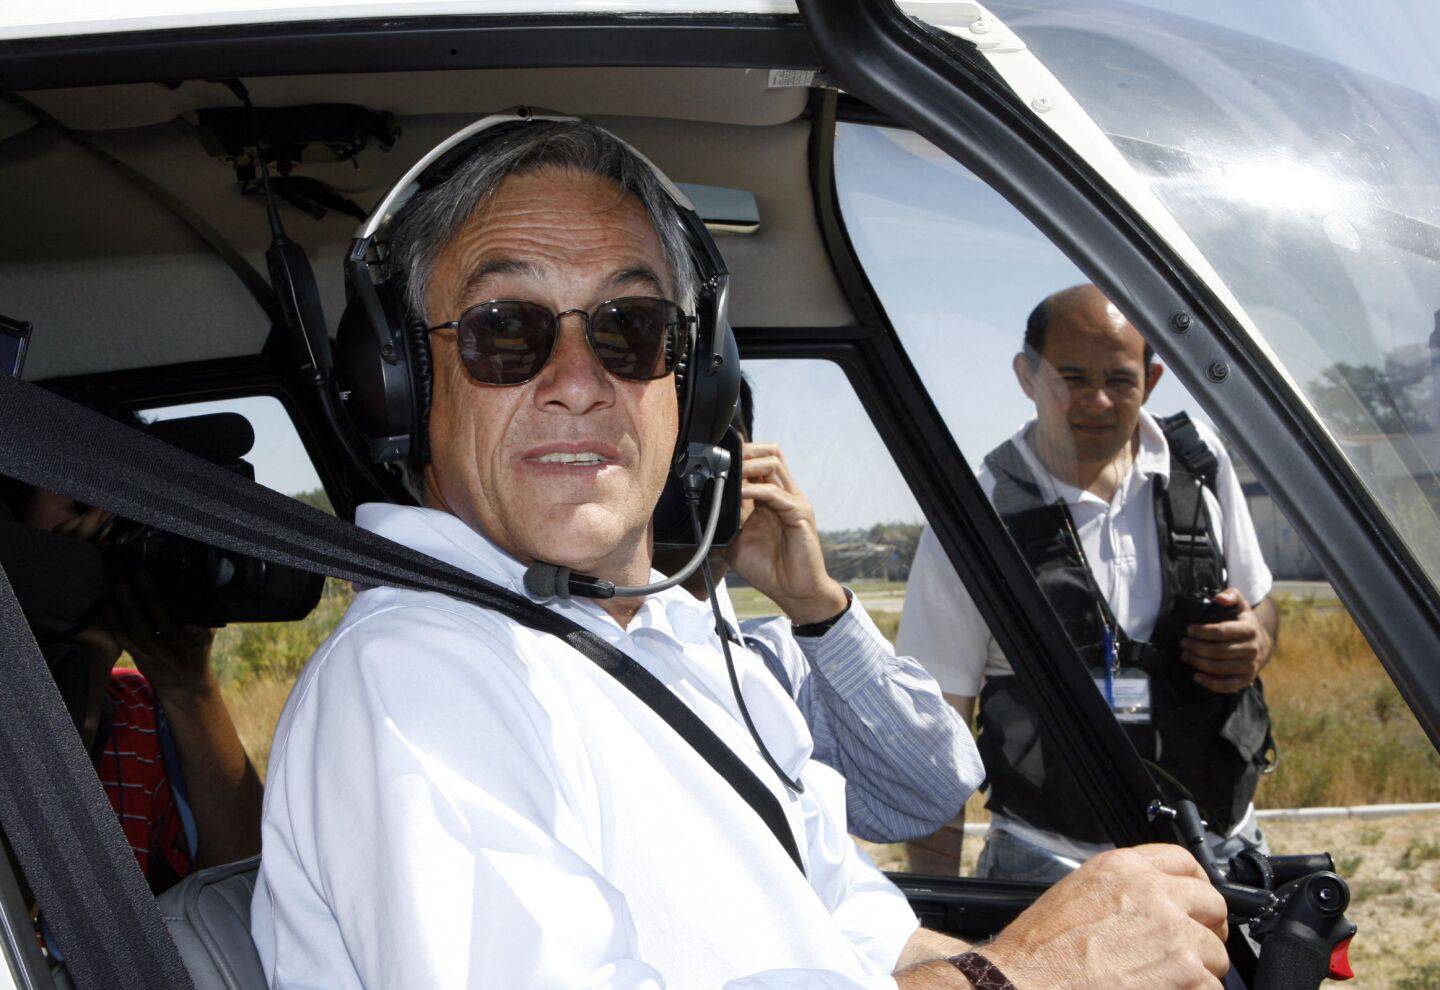 Sebastián Sebastián Piñera, quien fue presidente de Chile en dos gestiones, era un piloto cuya pasión era volar. Incluso, siendo presidente pedía pilotear.